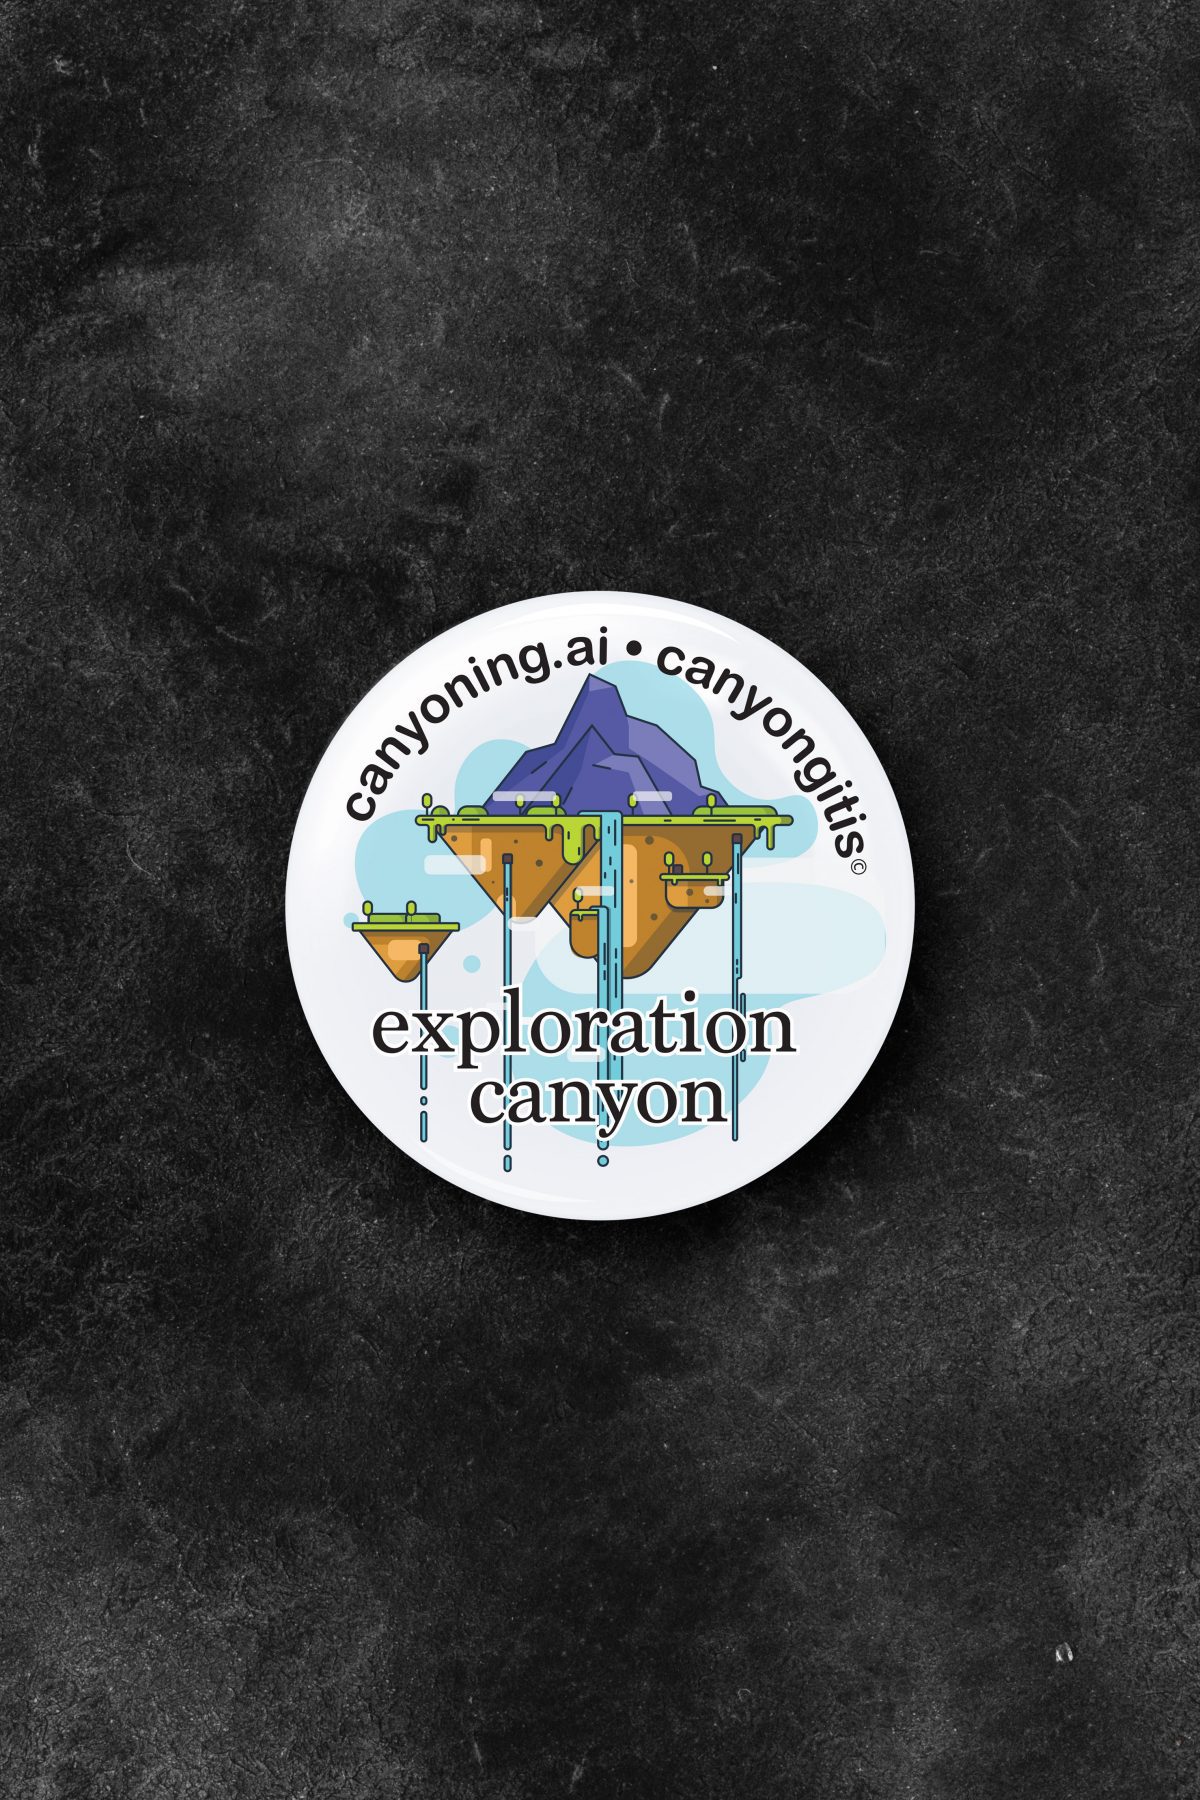 Exploration canyon badge image